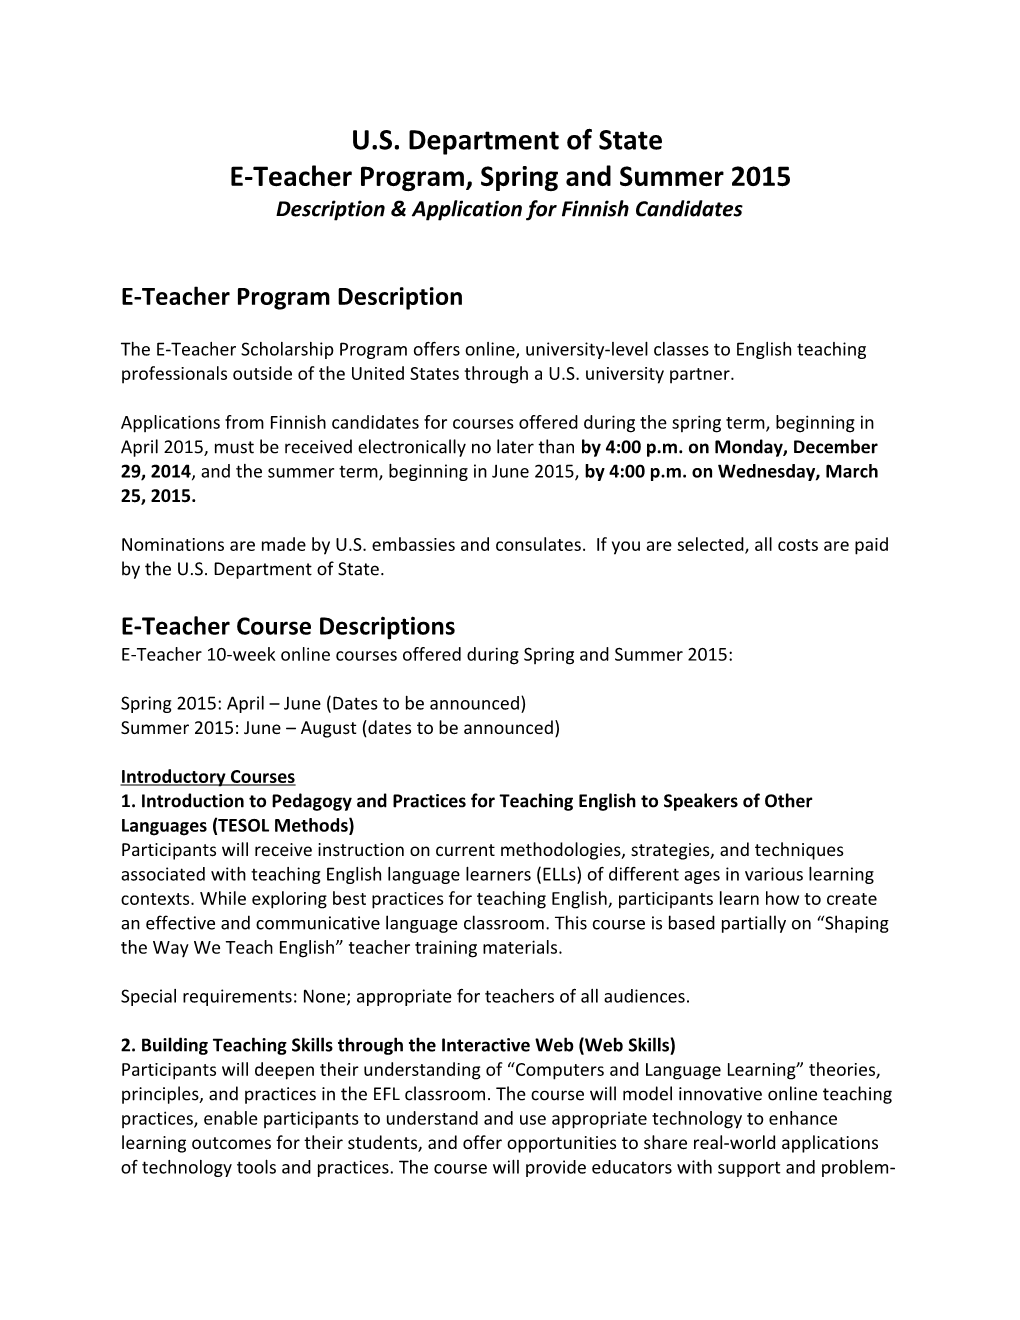 E-Teacher Program, Spring and Summer 2015